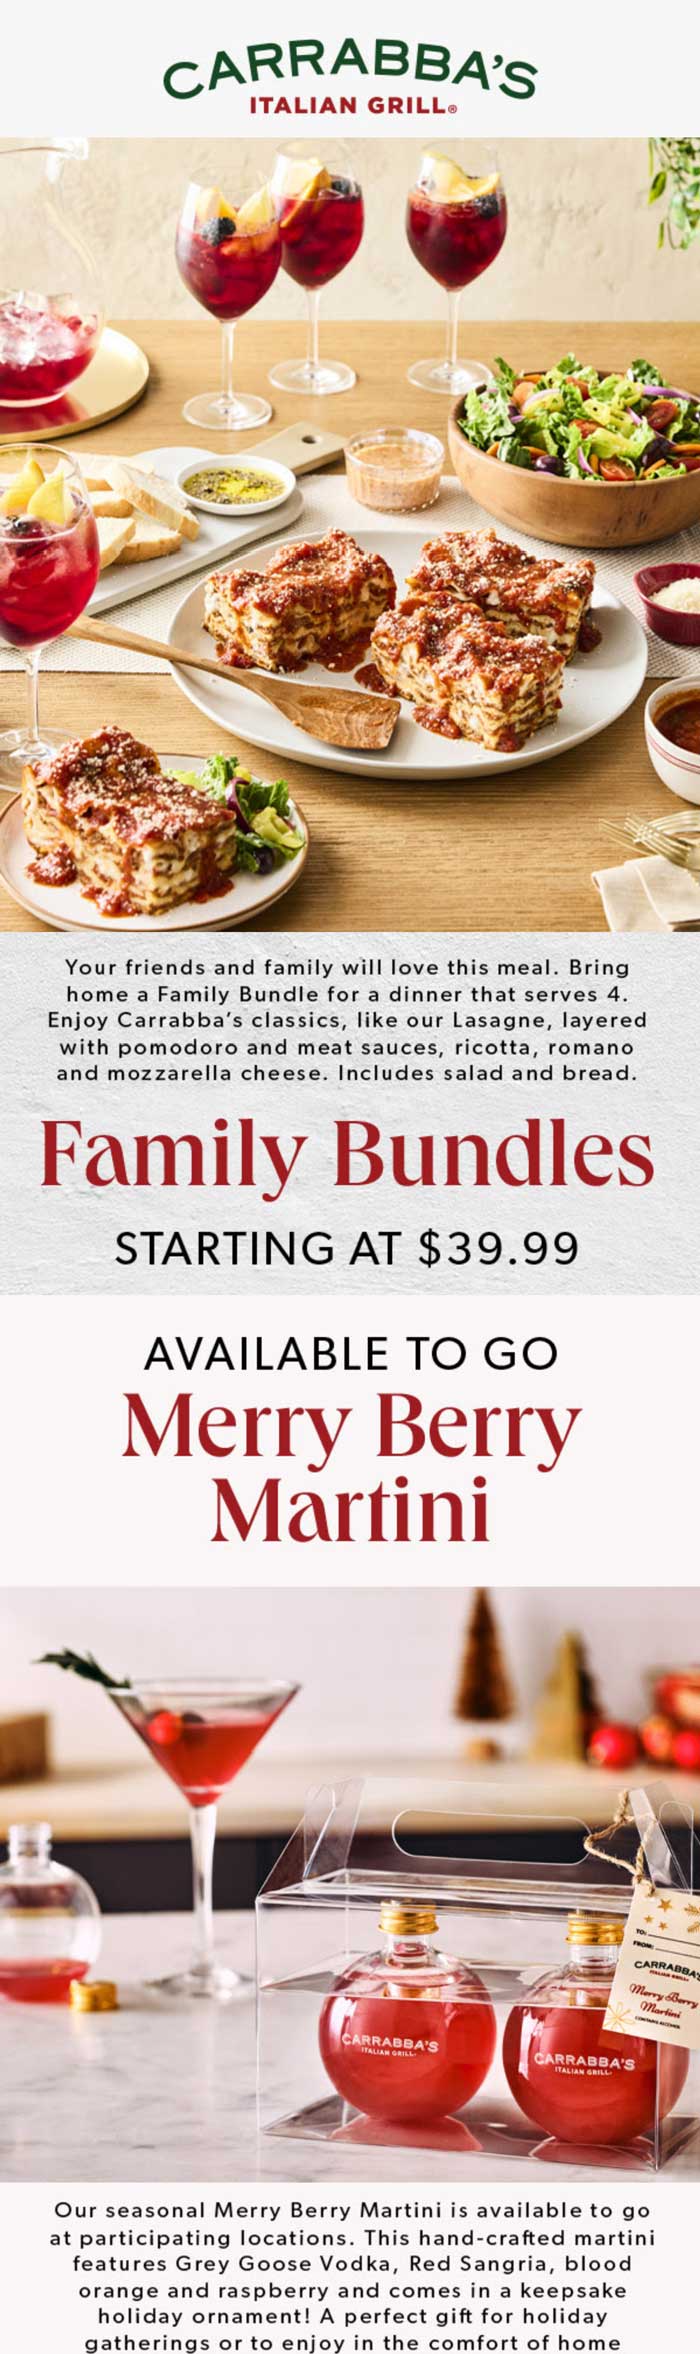 Family dinner bundle for 4 = $40 at Carrabbas Italian Grill #carrabbas